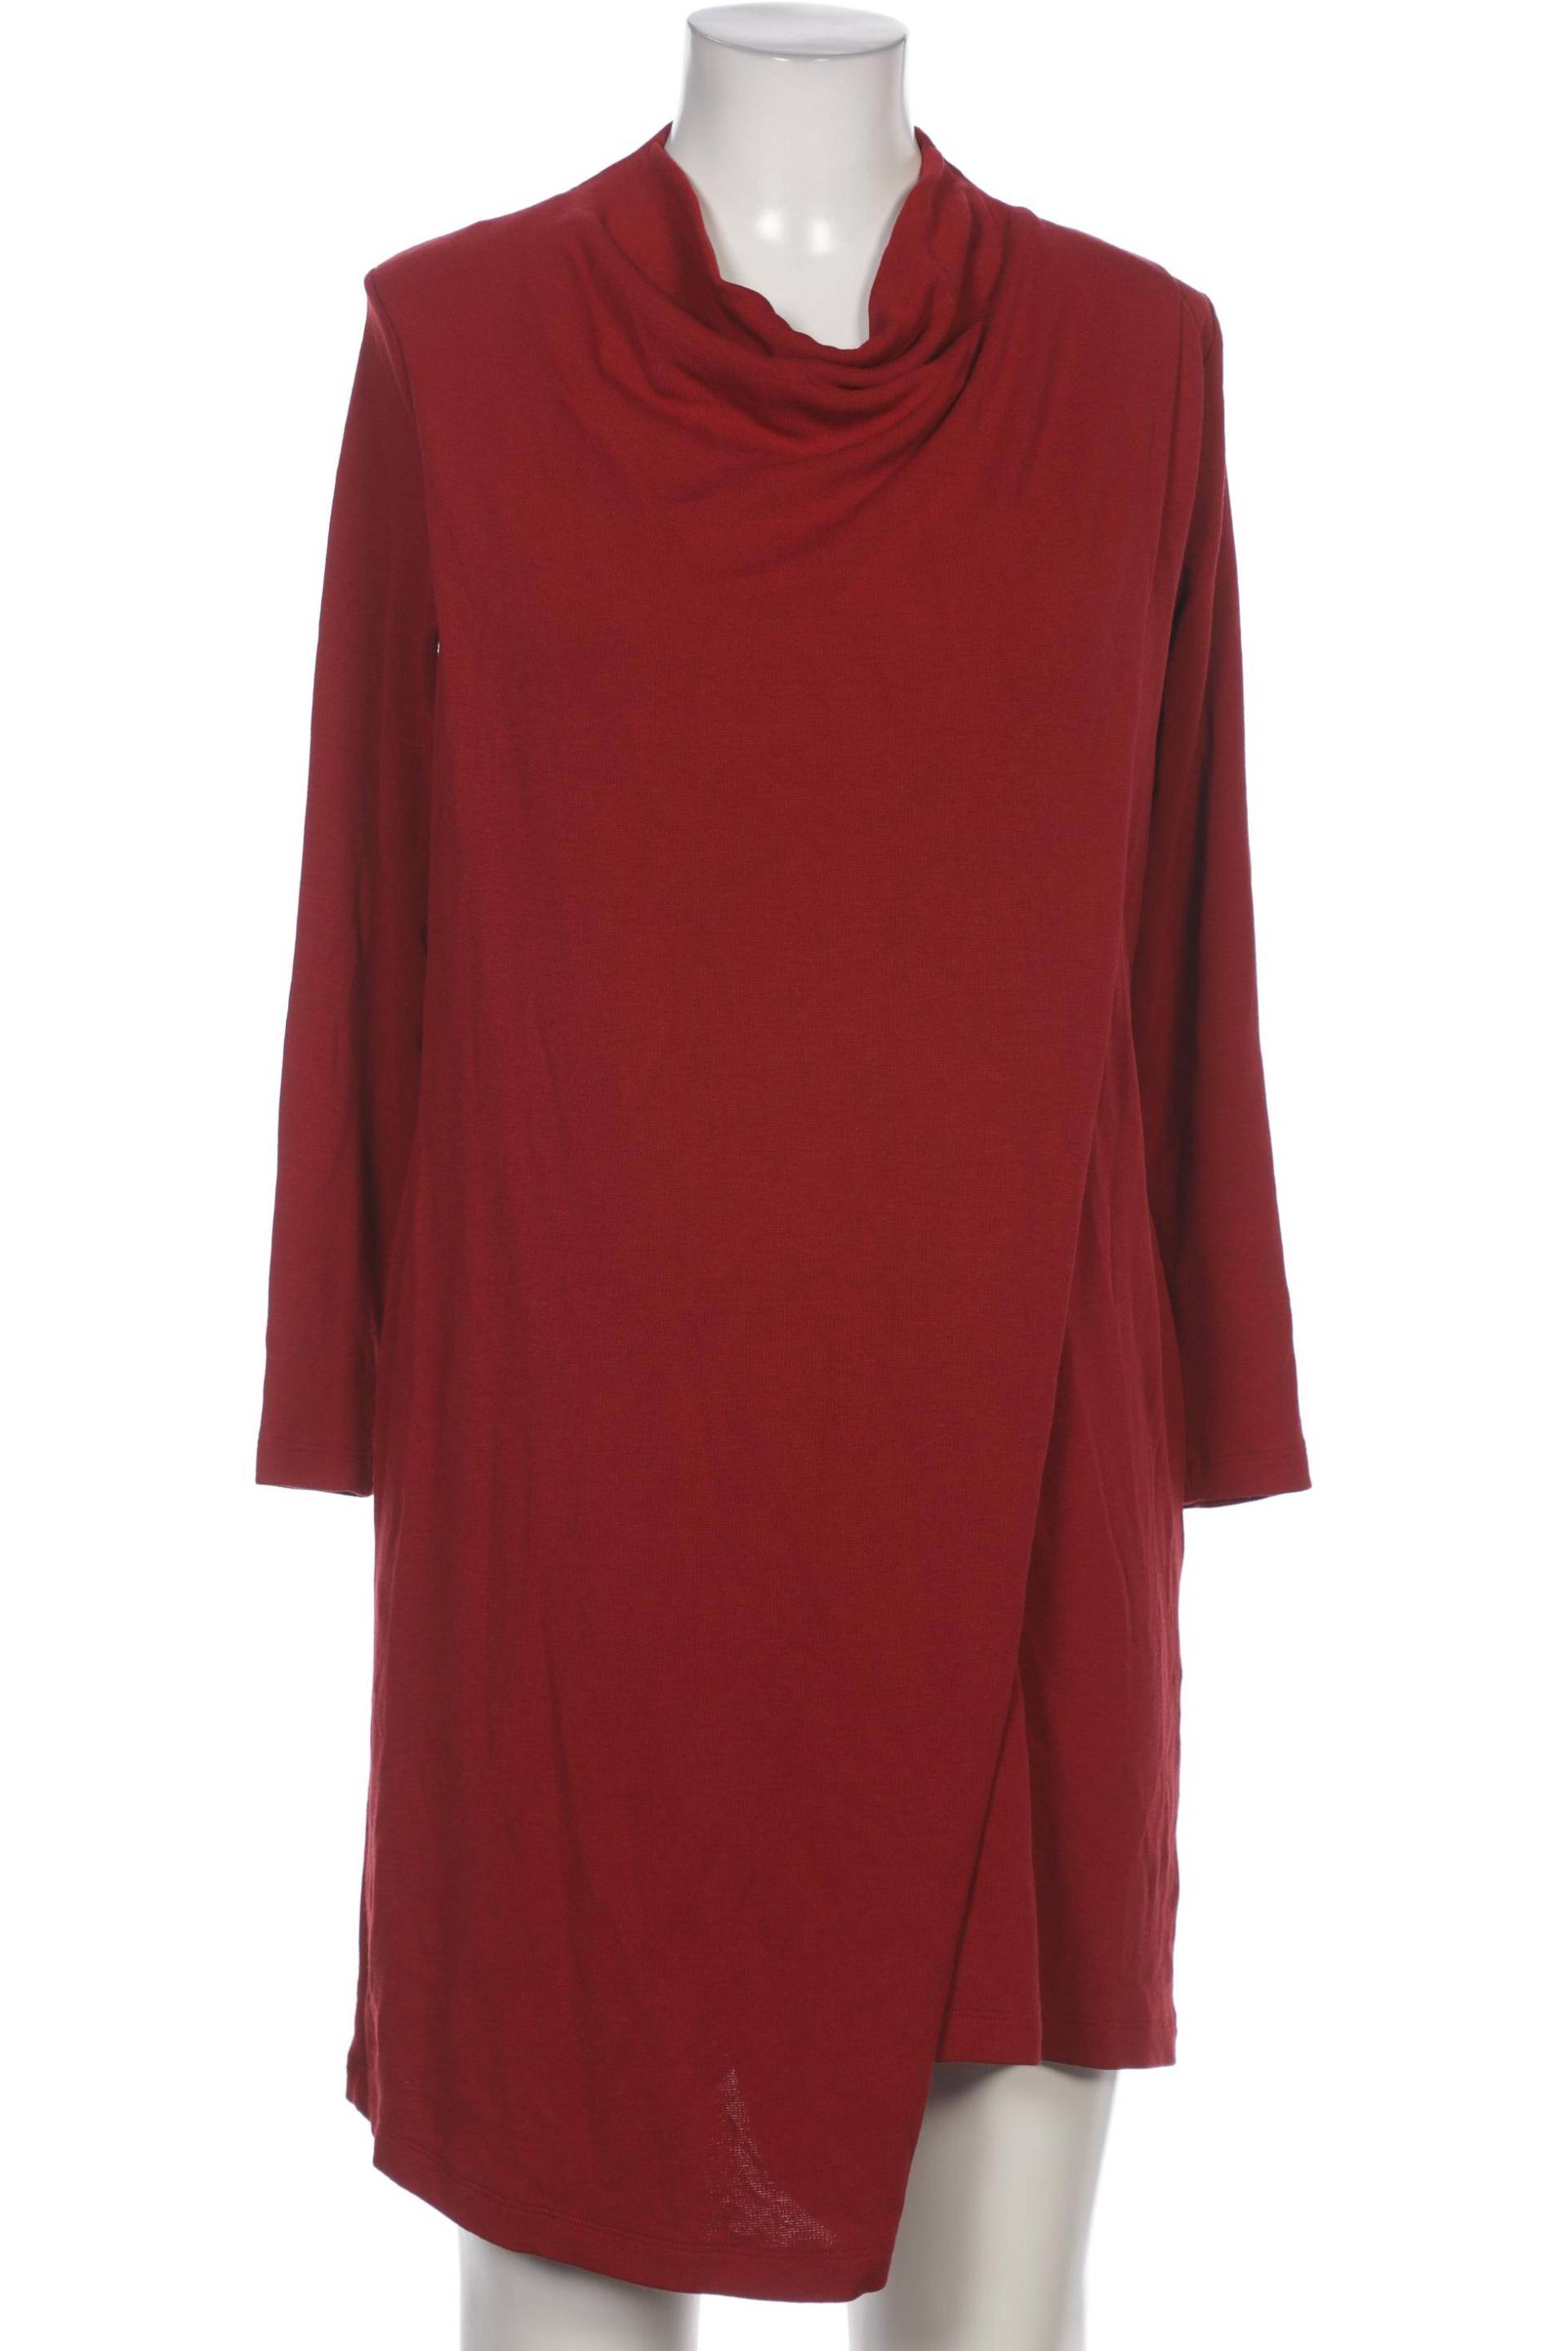 COS Damen Kleid, rot von COS